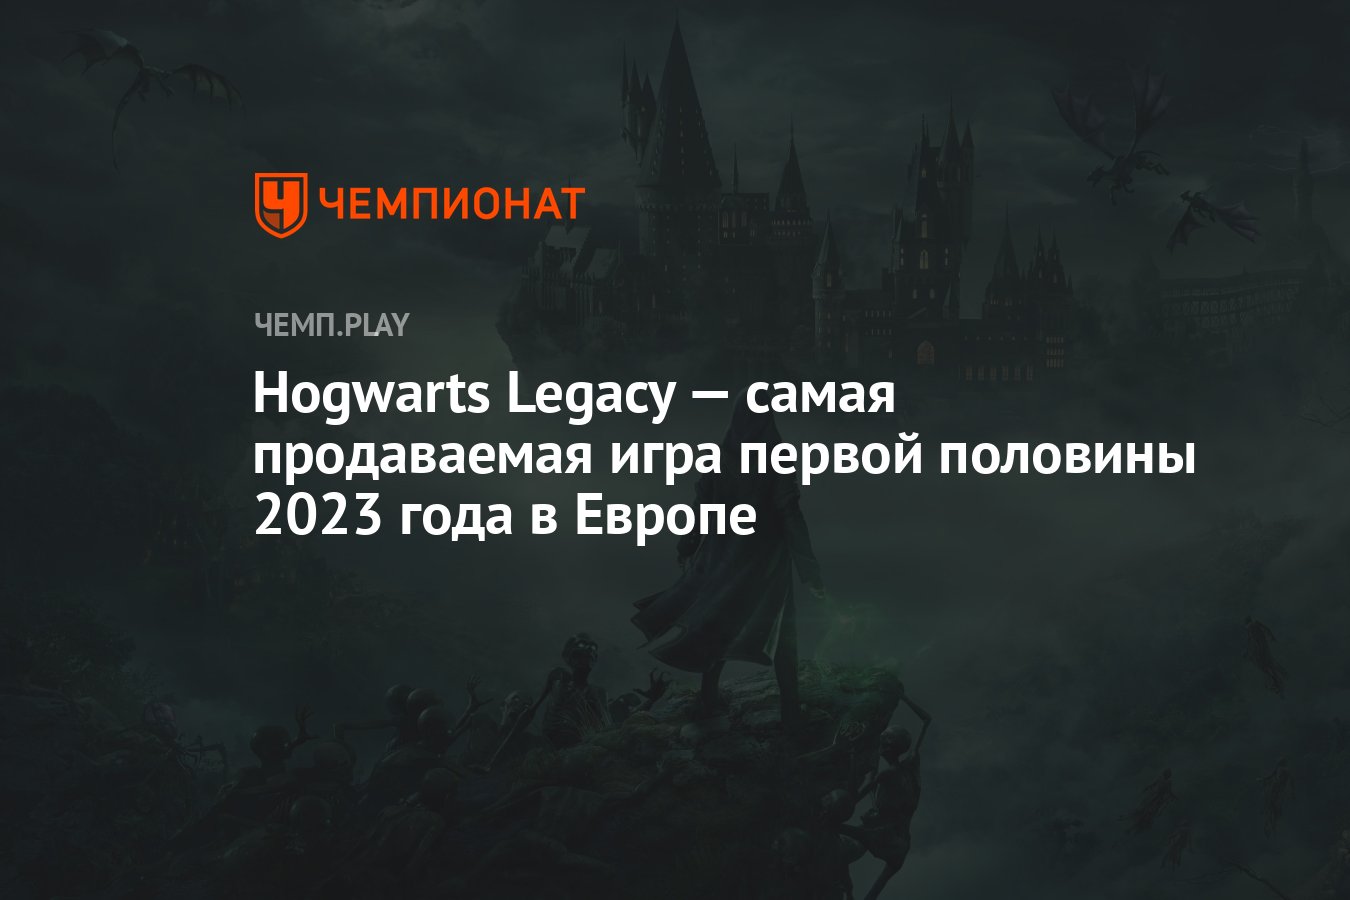 Первую половину 2023 года. Hogwarts Legacy синяя птица в игре.